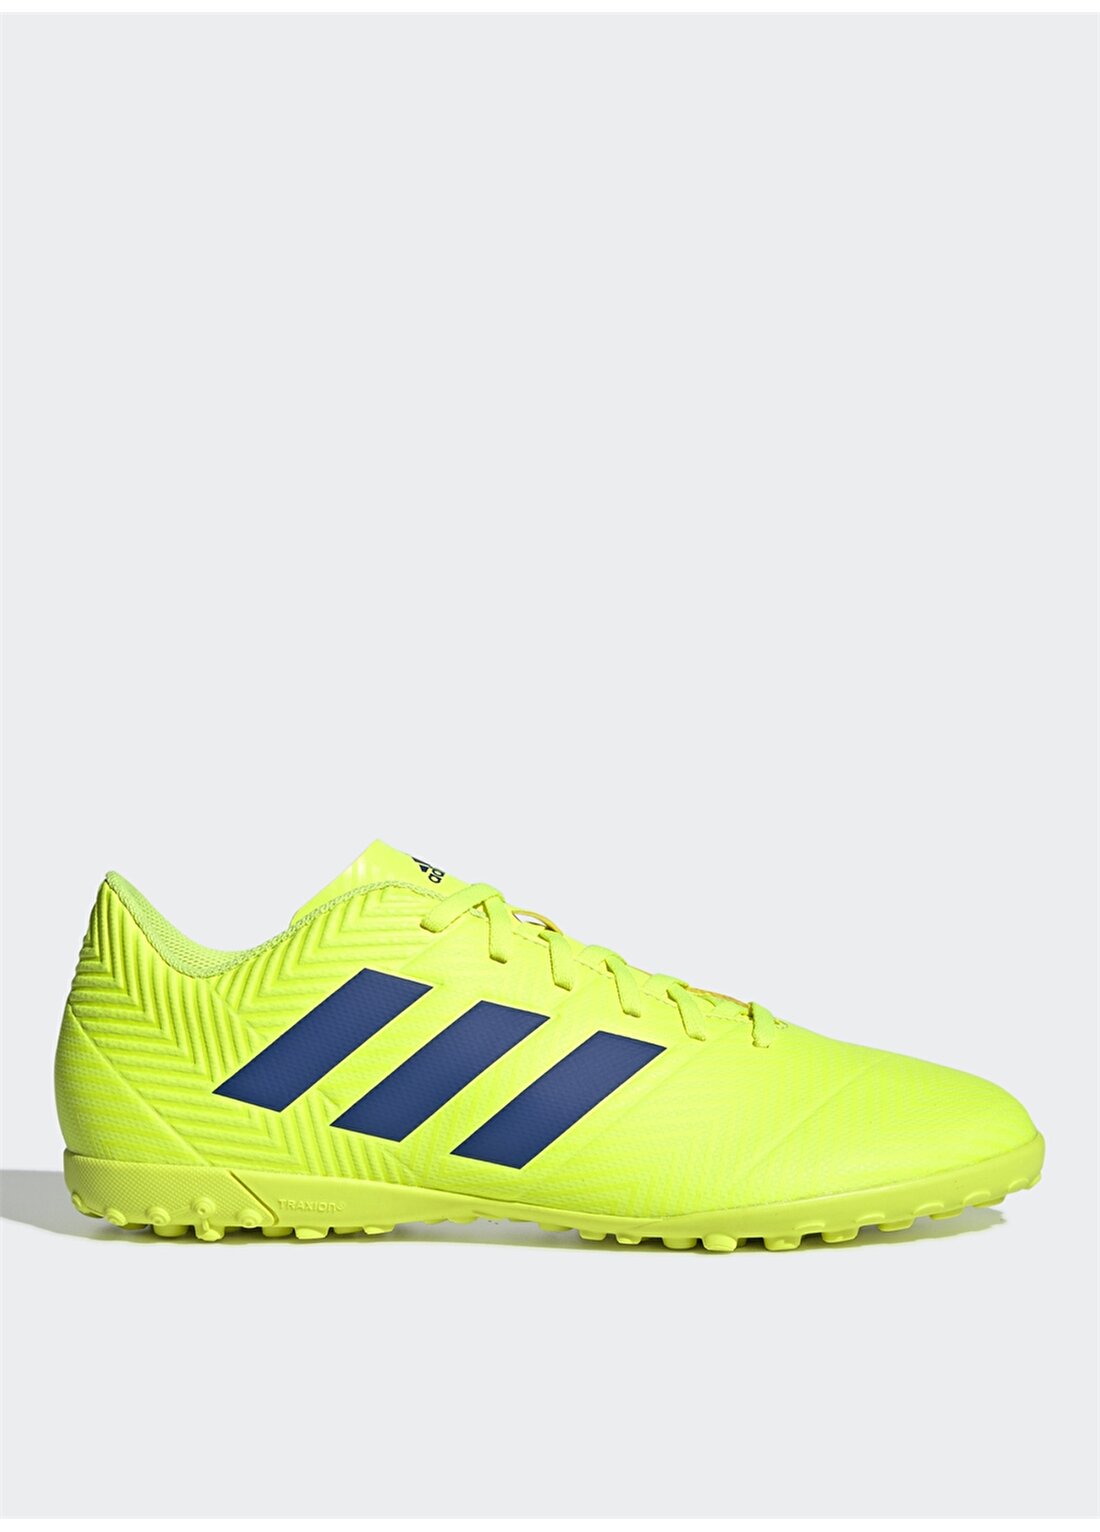 Adidas Nemeziz Tango 18.4 Tf BB9473 Futbol Ayakkabısı